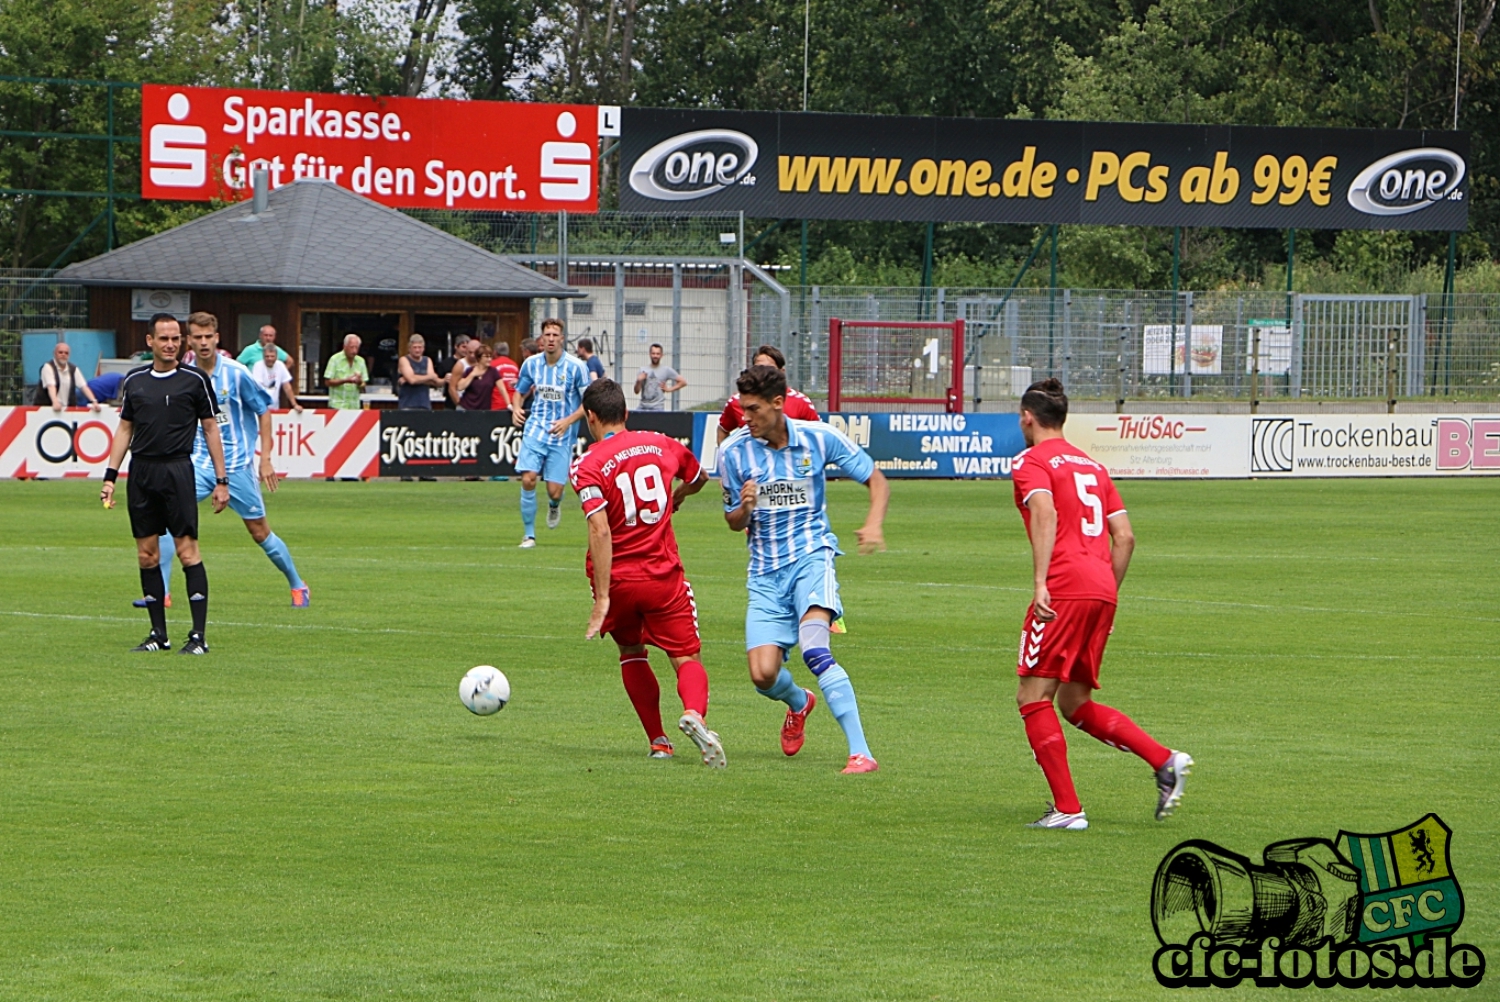  ZFC Meuselwitz - Chemnitzer FC 0:1 (0:0)